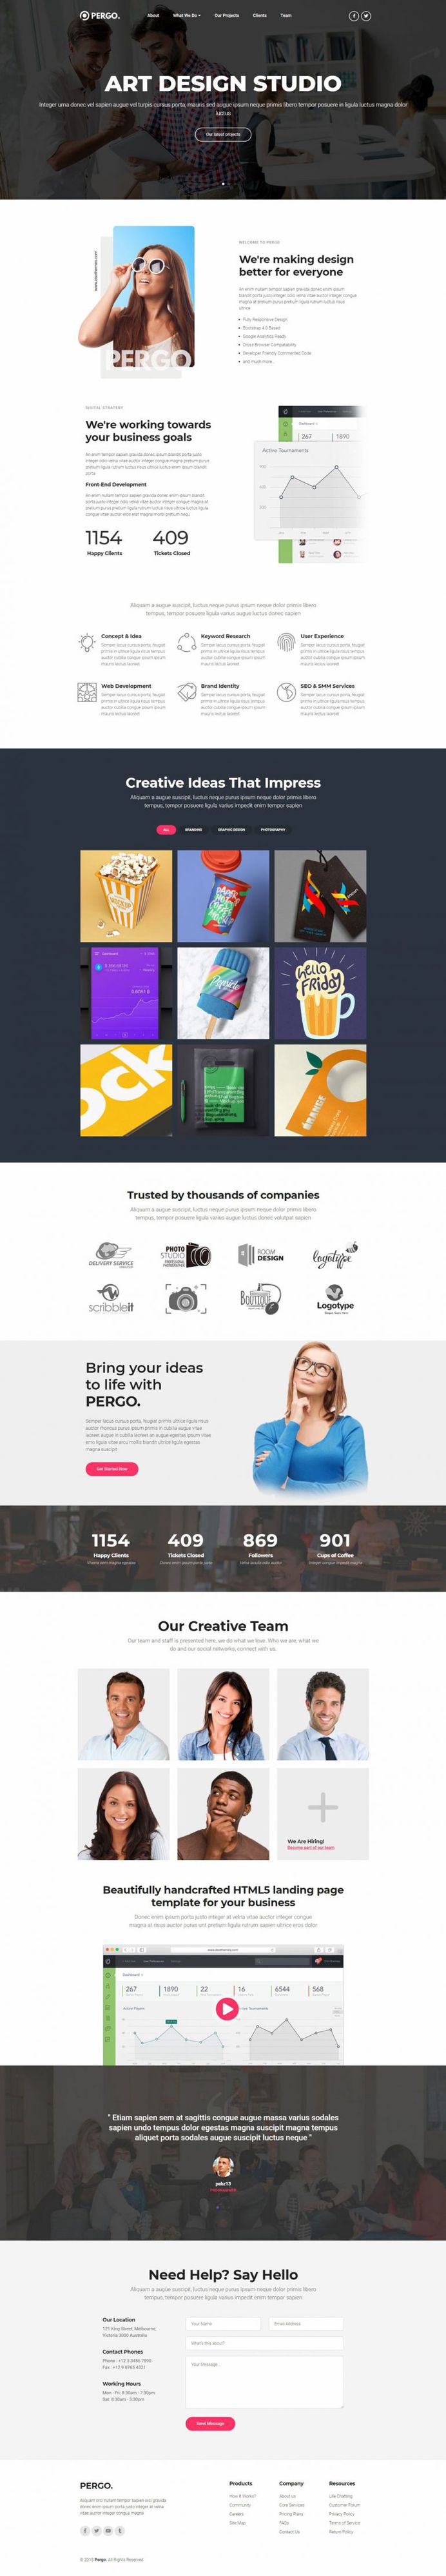 Pergo – Design Studio Landing Page